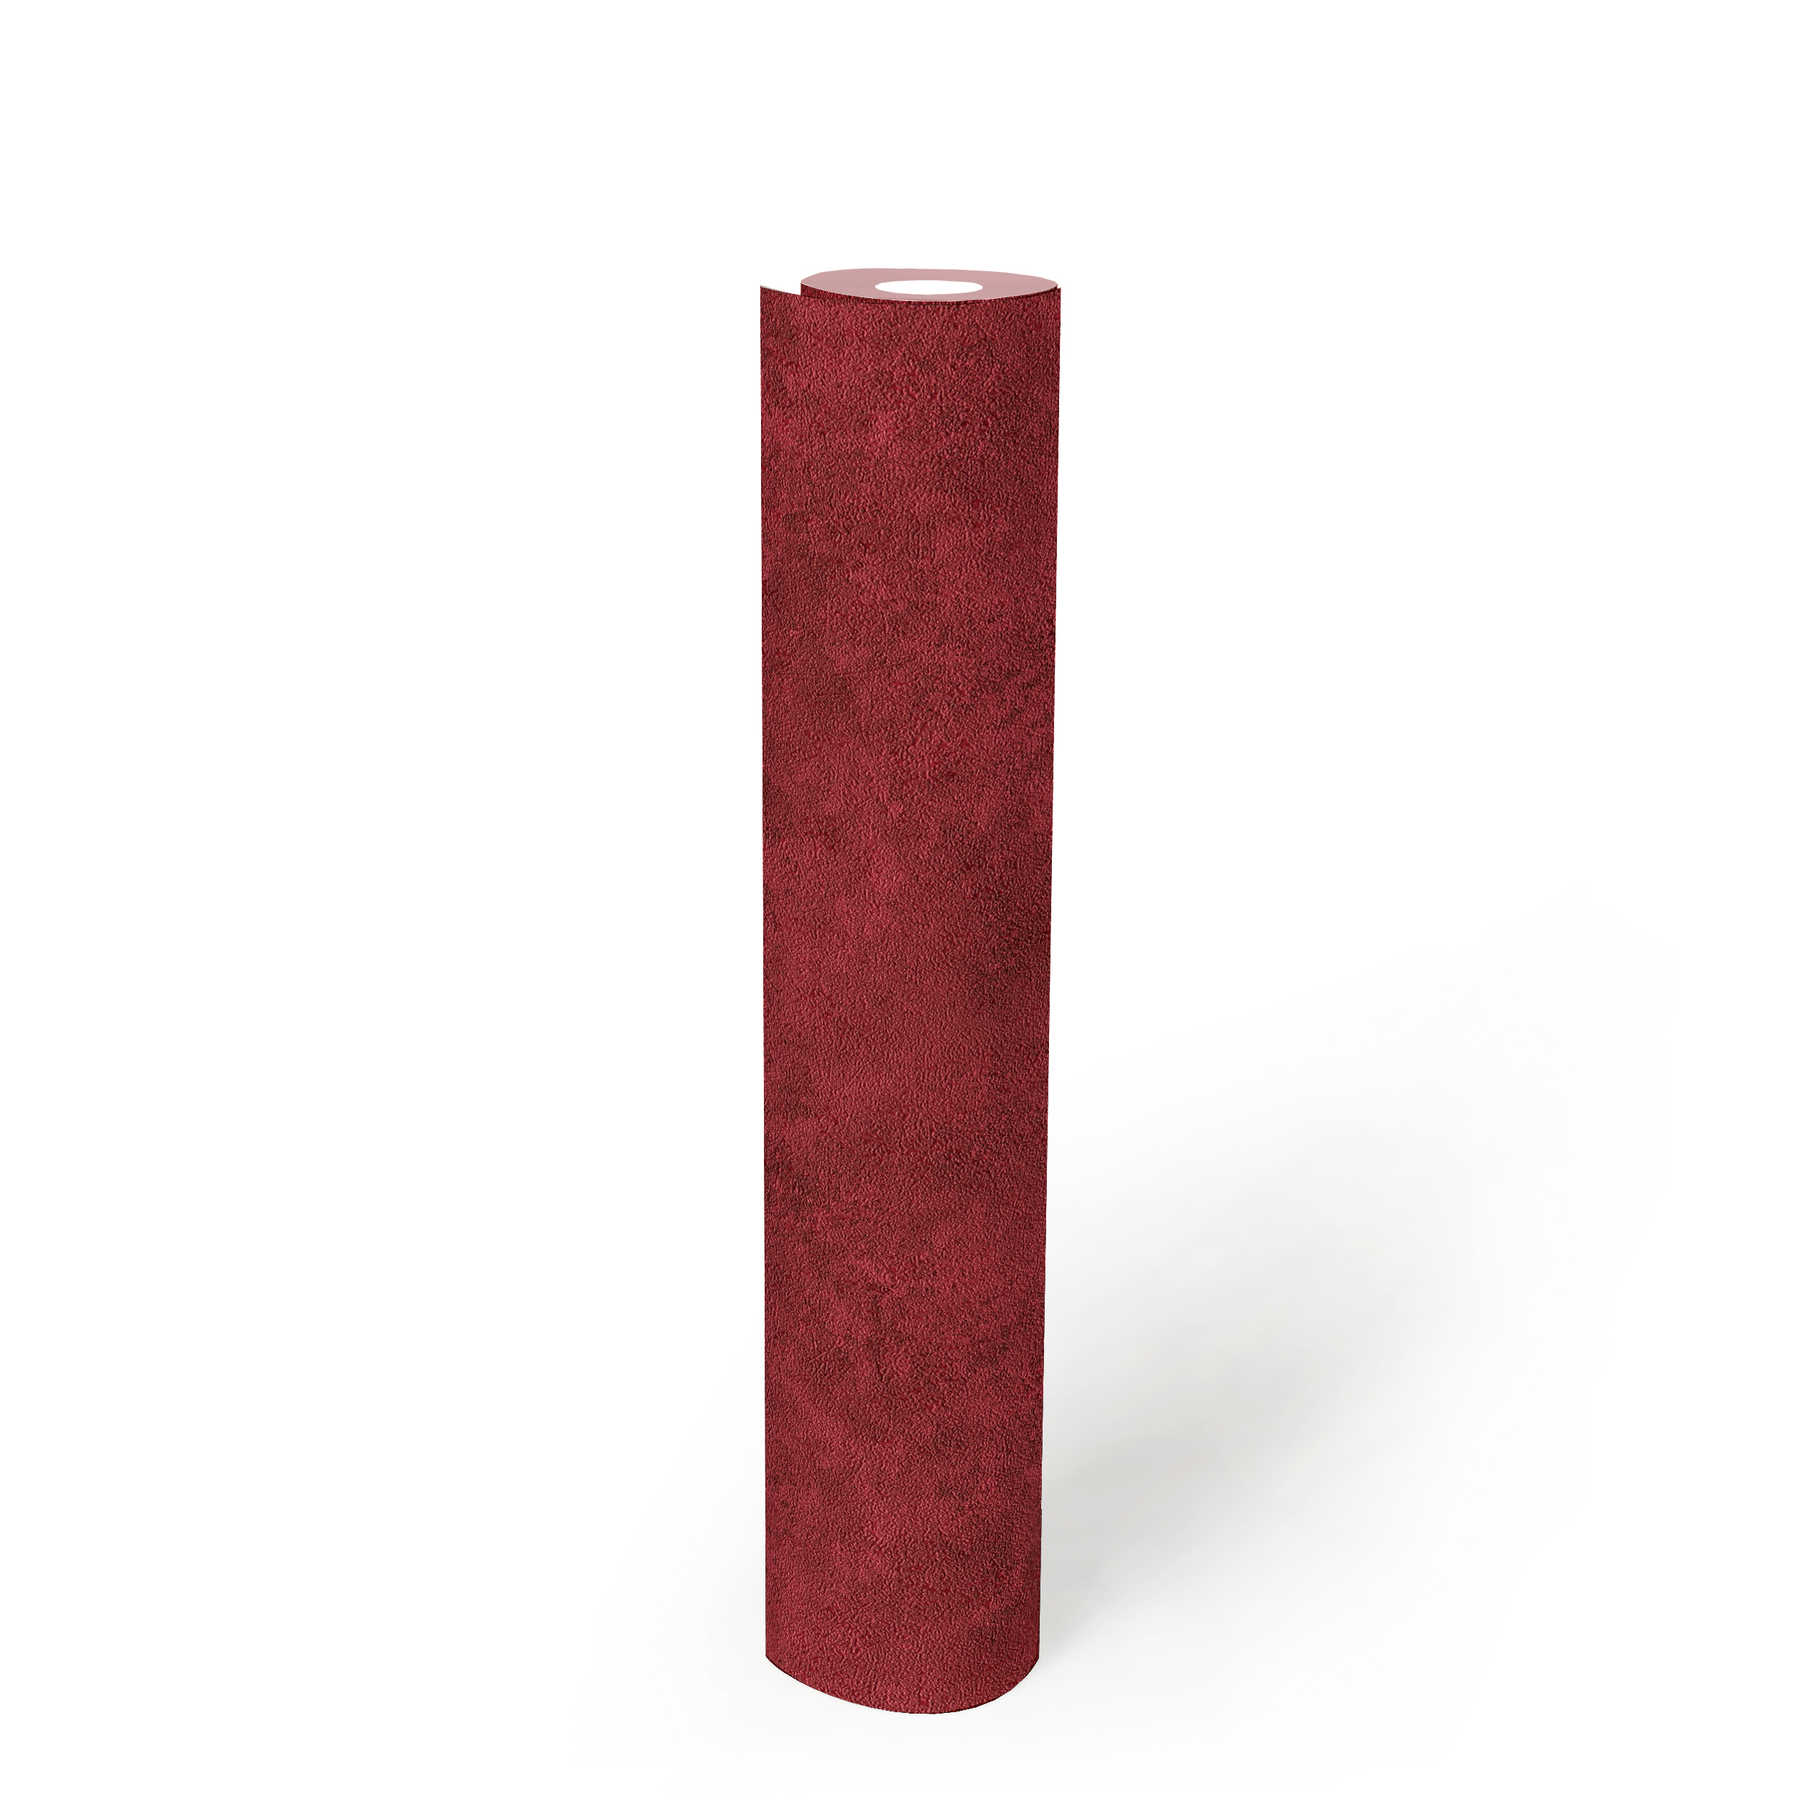             Papier peint uni Ombre de couleur, motif naturel structuré - rouge
        